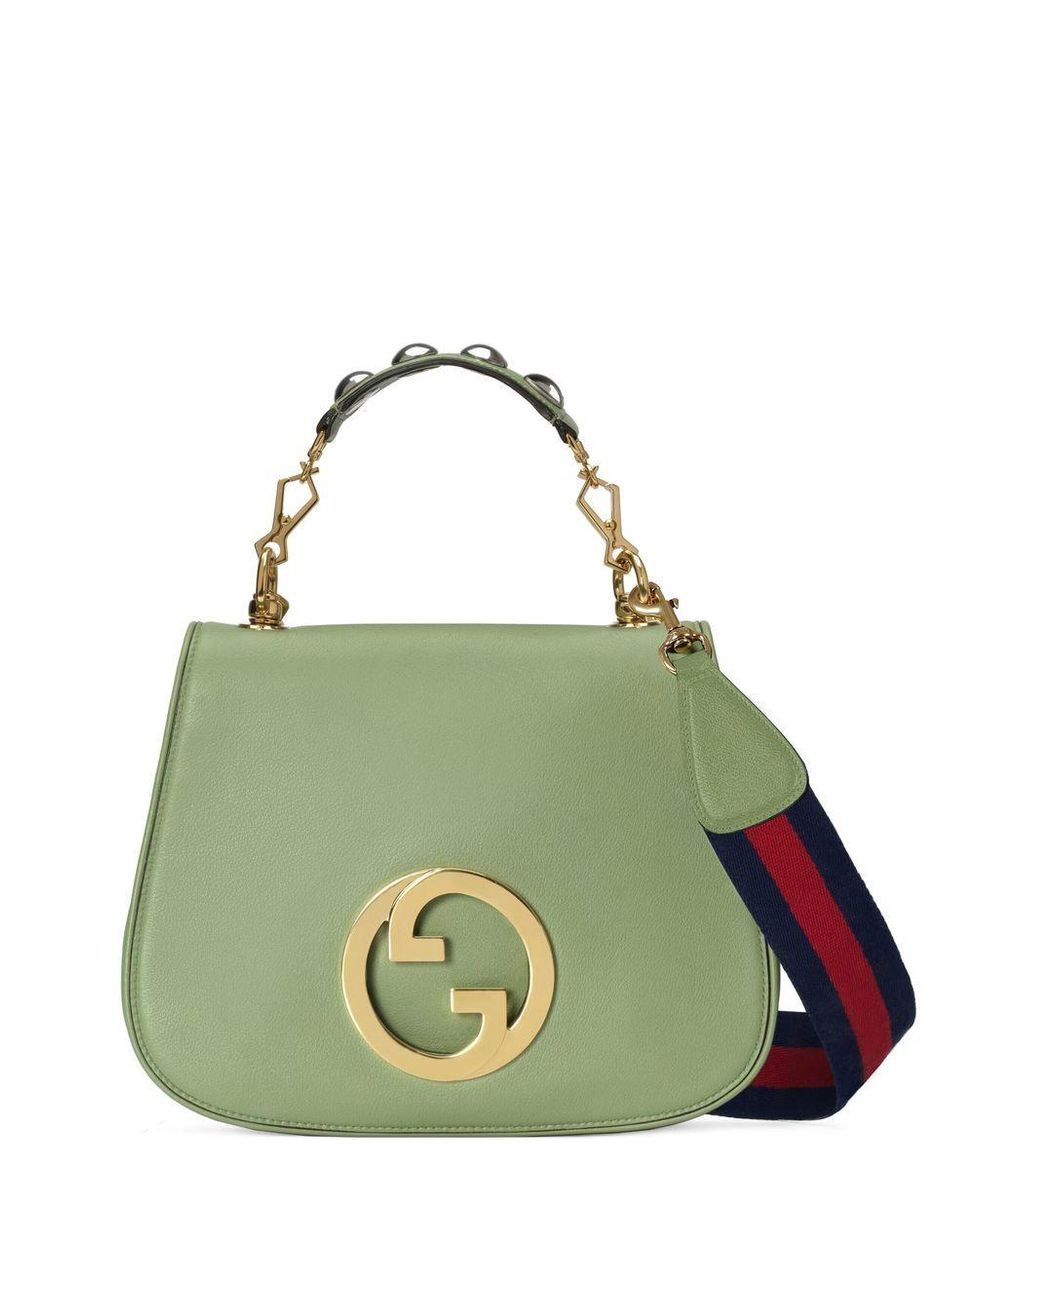 Gucci Blondie Top Handle Bag in Green | Lyst UK